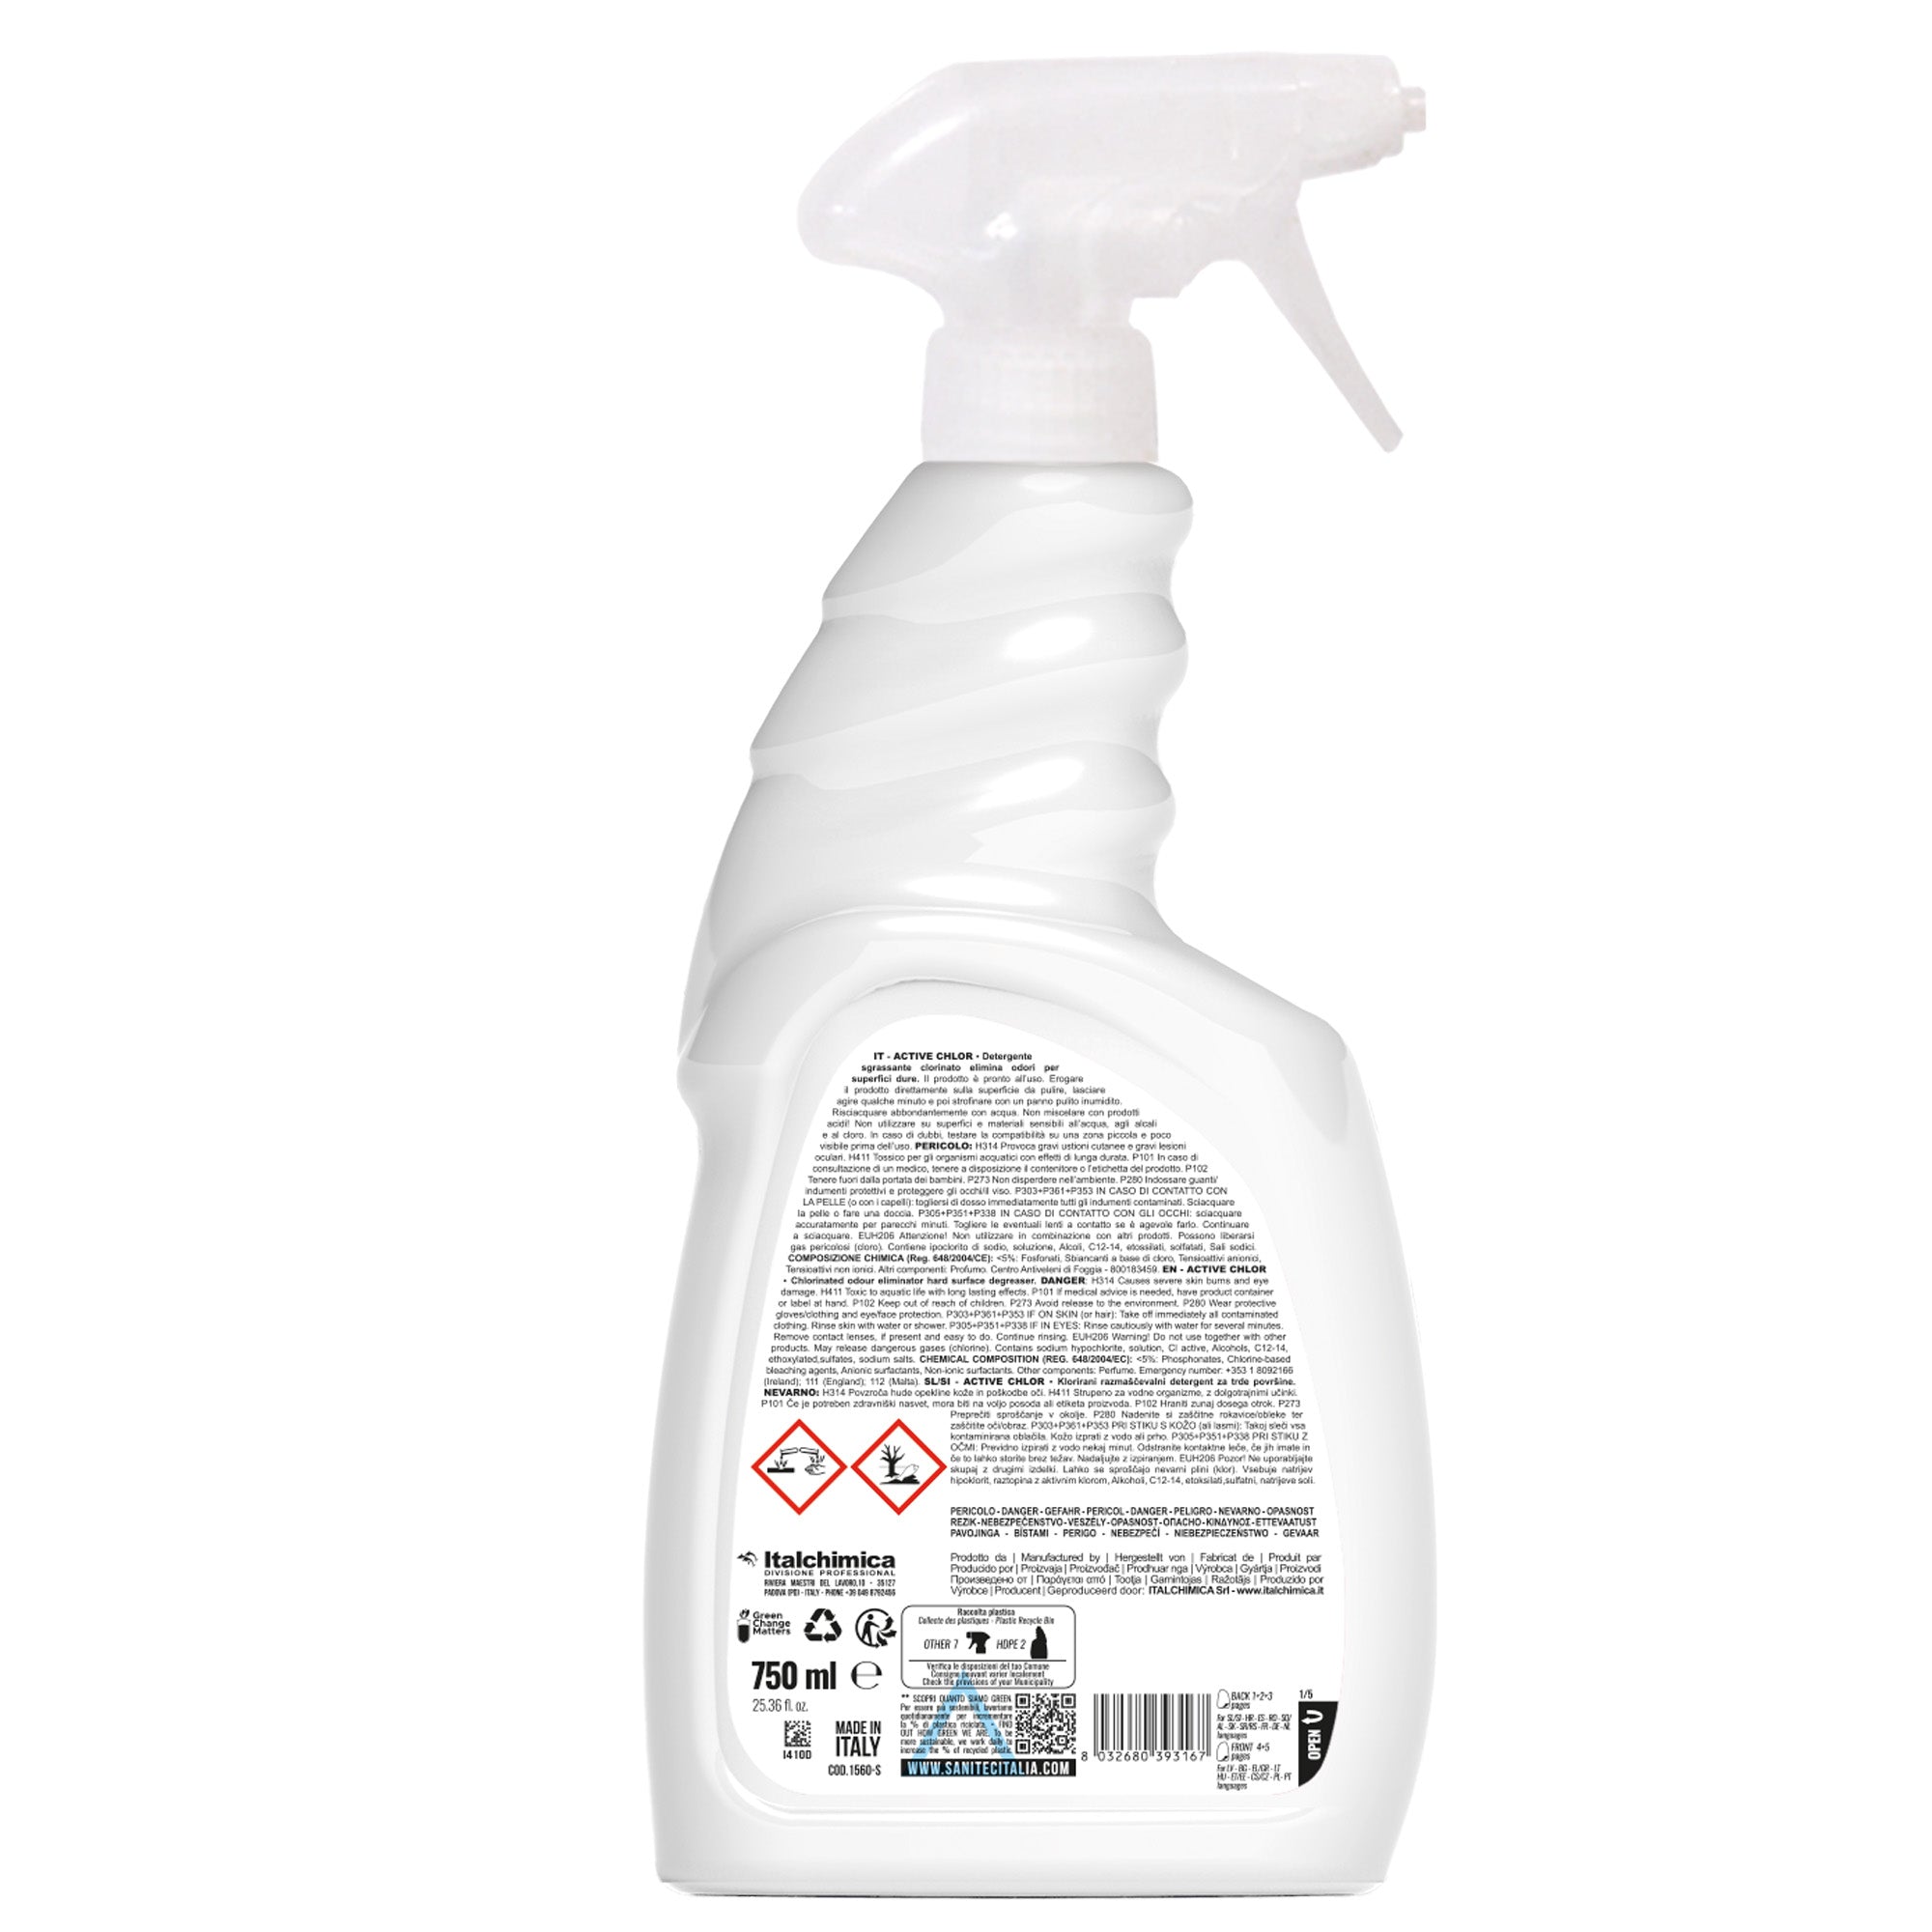 sanitec-detergente-sgrassante-clorinato-trigger-750ml